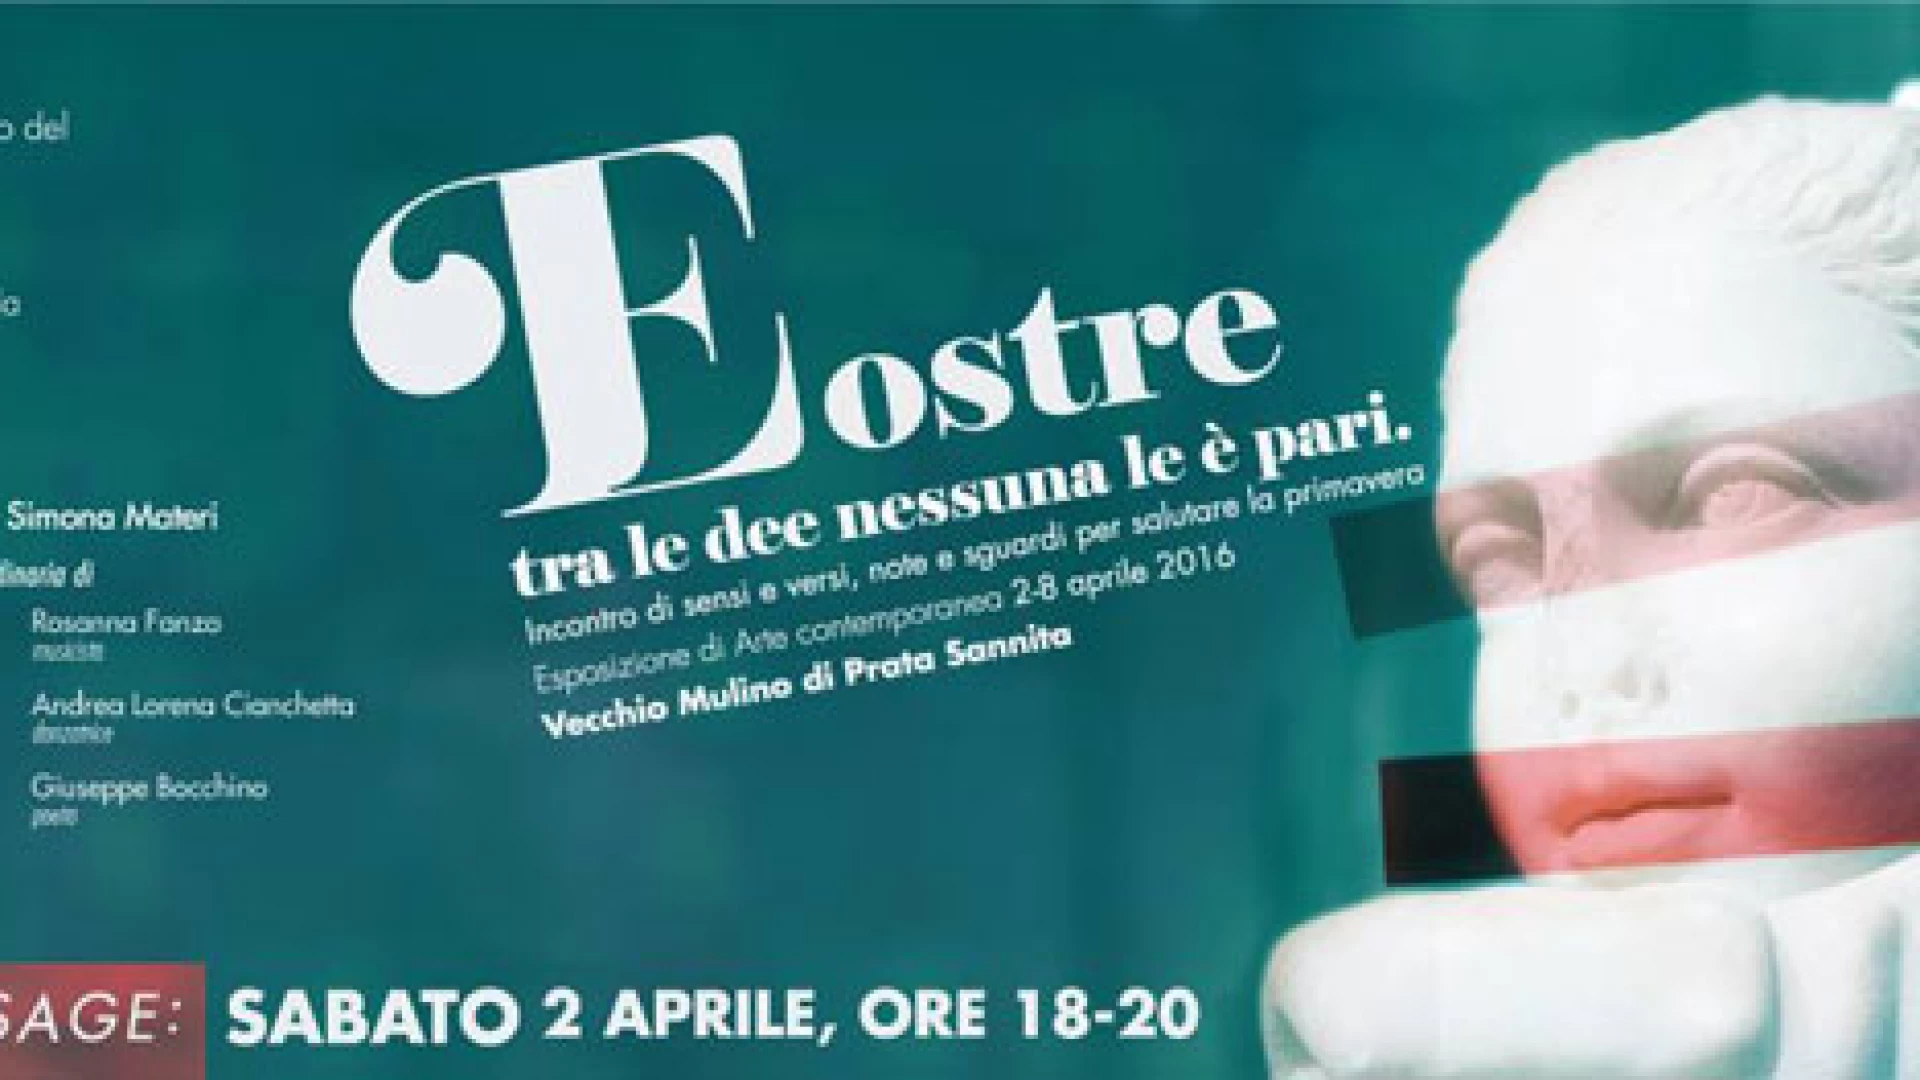 Prata Sannita: Eostre, tra le dee nessuna le è pari. Il 2 aprile il vernissage di inaugurazione della mostra d’arte contemporanea.